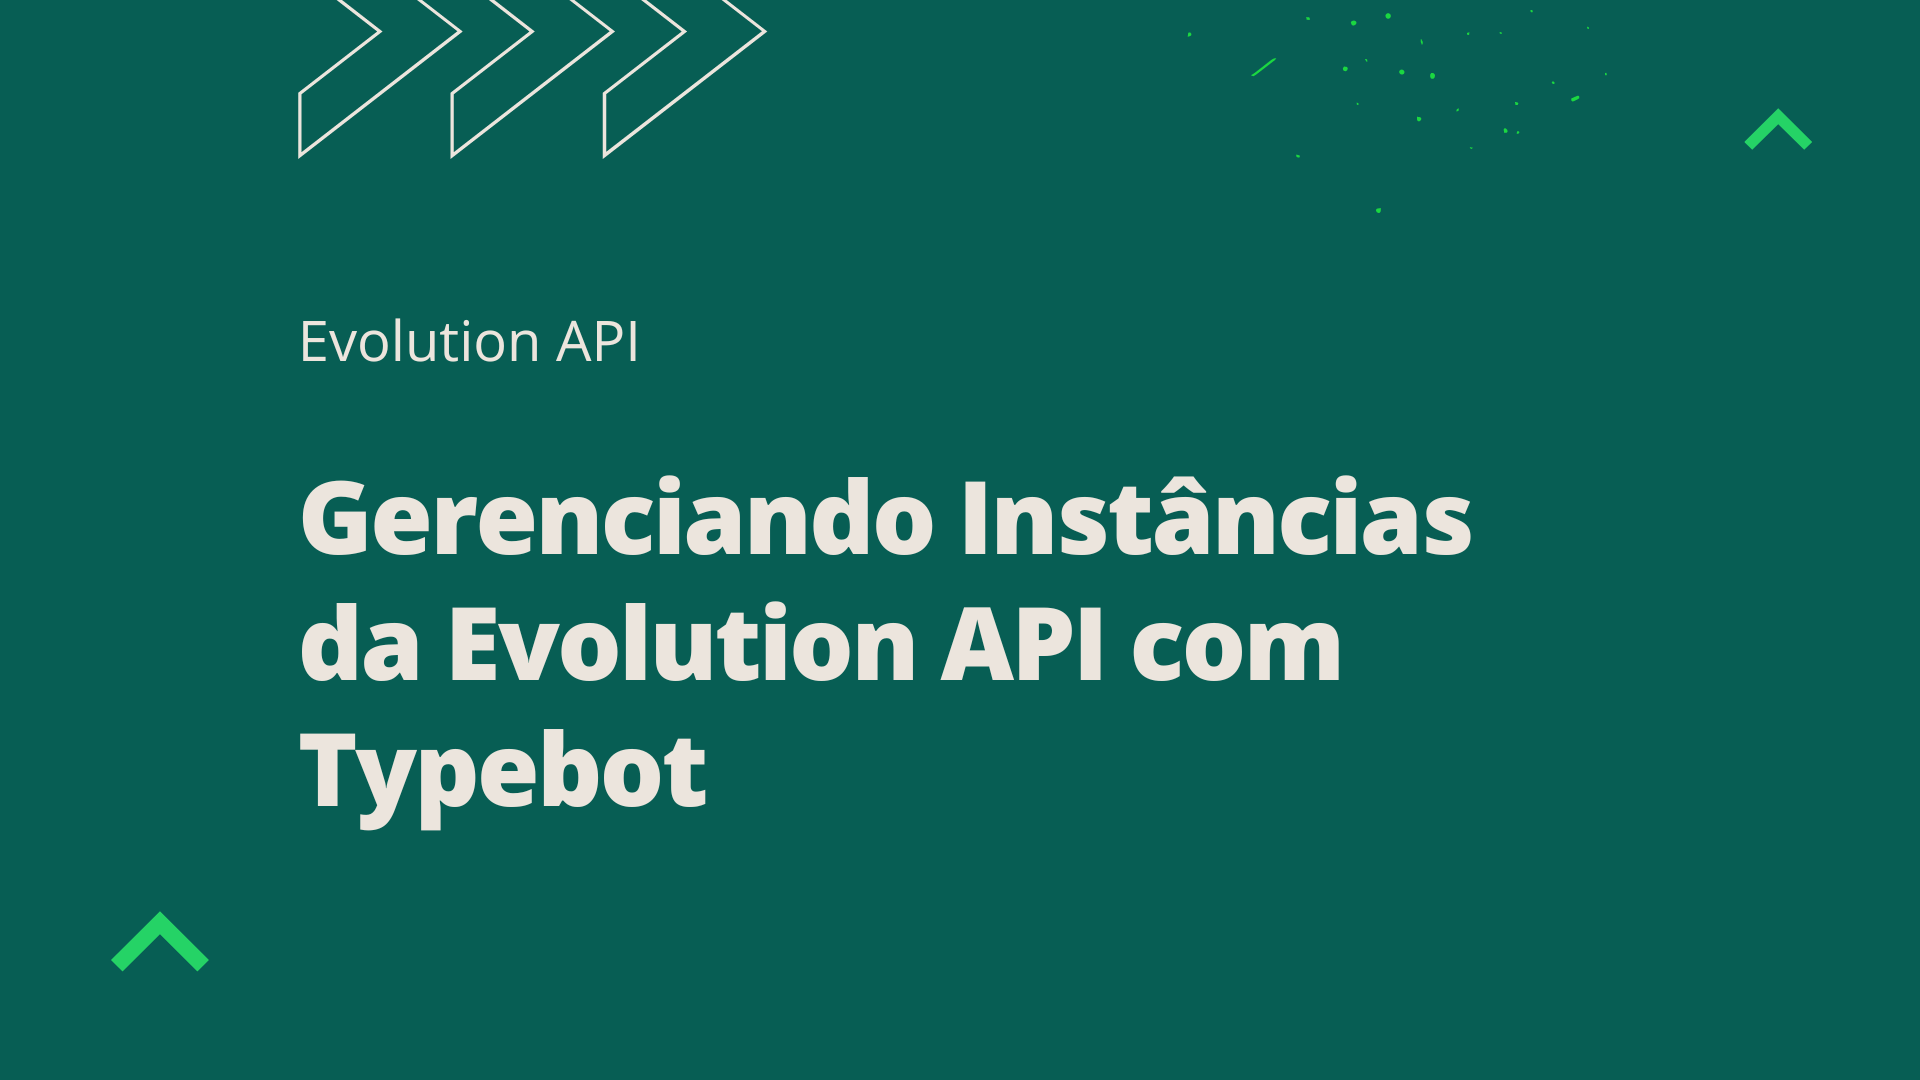 Gerenciando Instâncias da Evolution API com Typebot